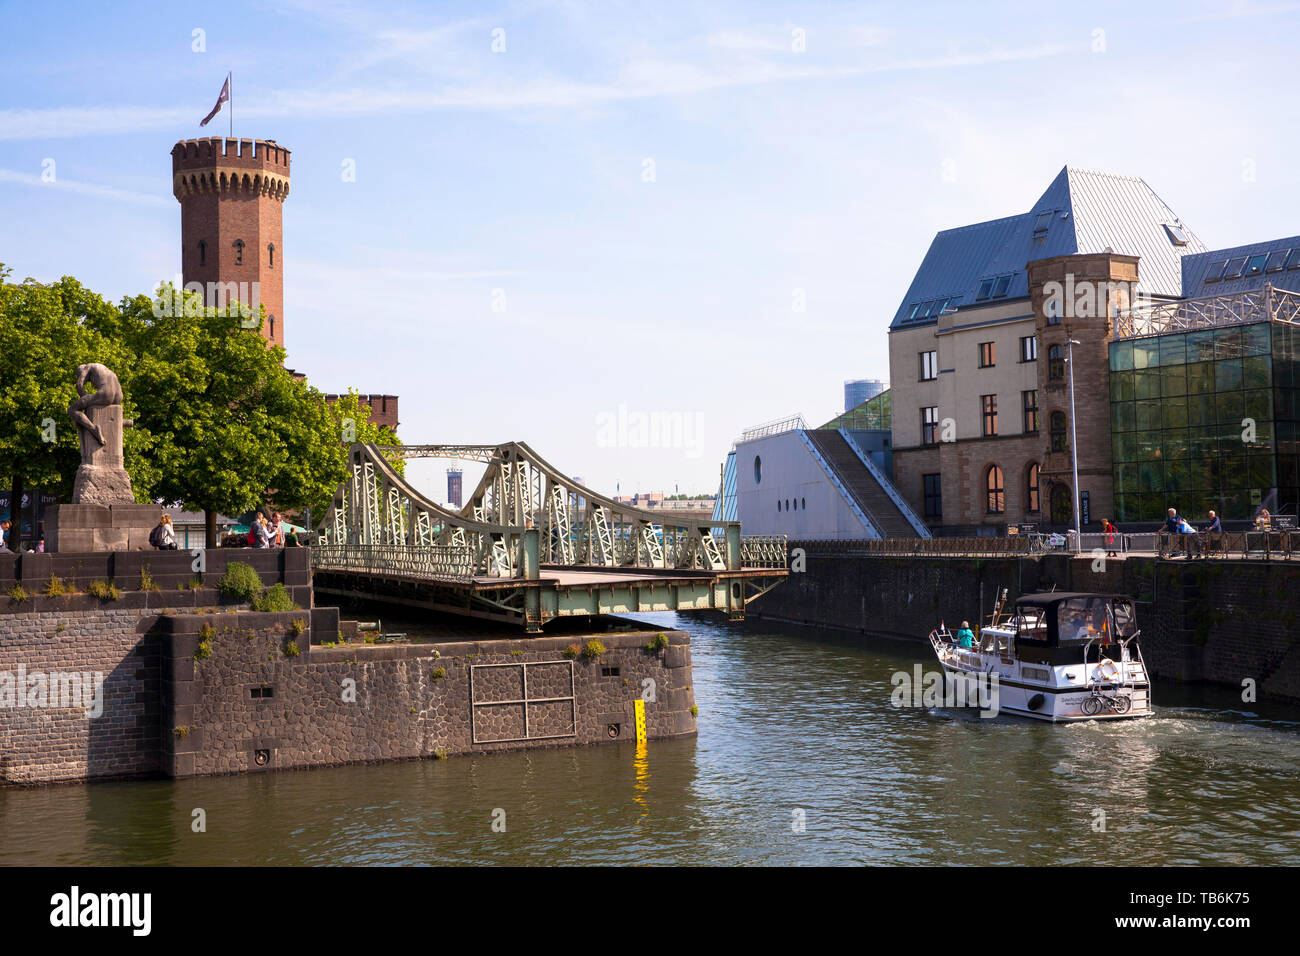 Le pont tournant sur le port de Rheinau, la tour Malakoff et le Musée du Chocolat, Cologne, Allemagne. die geoeffnete Drehbruecke Rheinauhafe m Banque D'Images